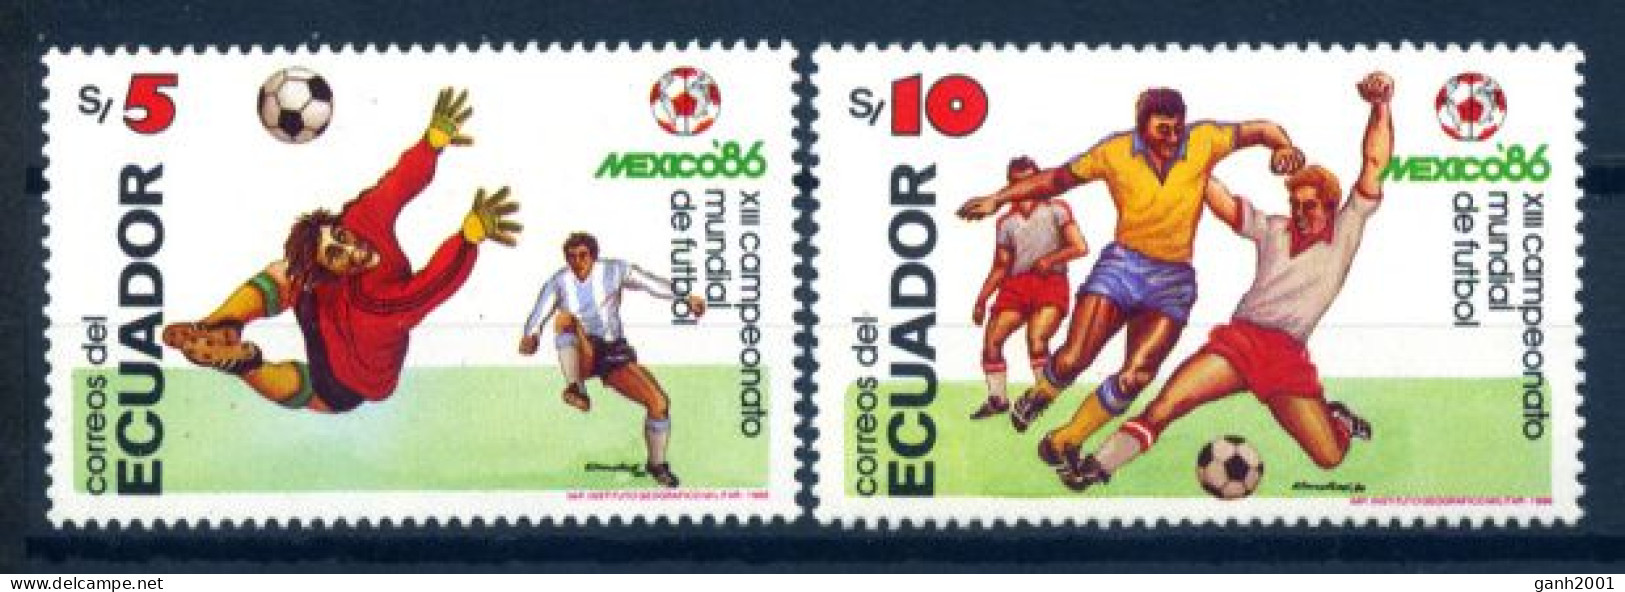 Ecuador 1986 / Football Soccer FIFA World Cup Mexico MNH Fútbol Copa Mundial / Hf04  32-2 - 1986 – México